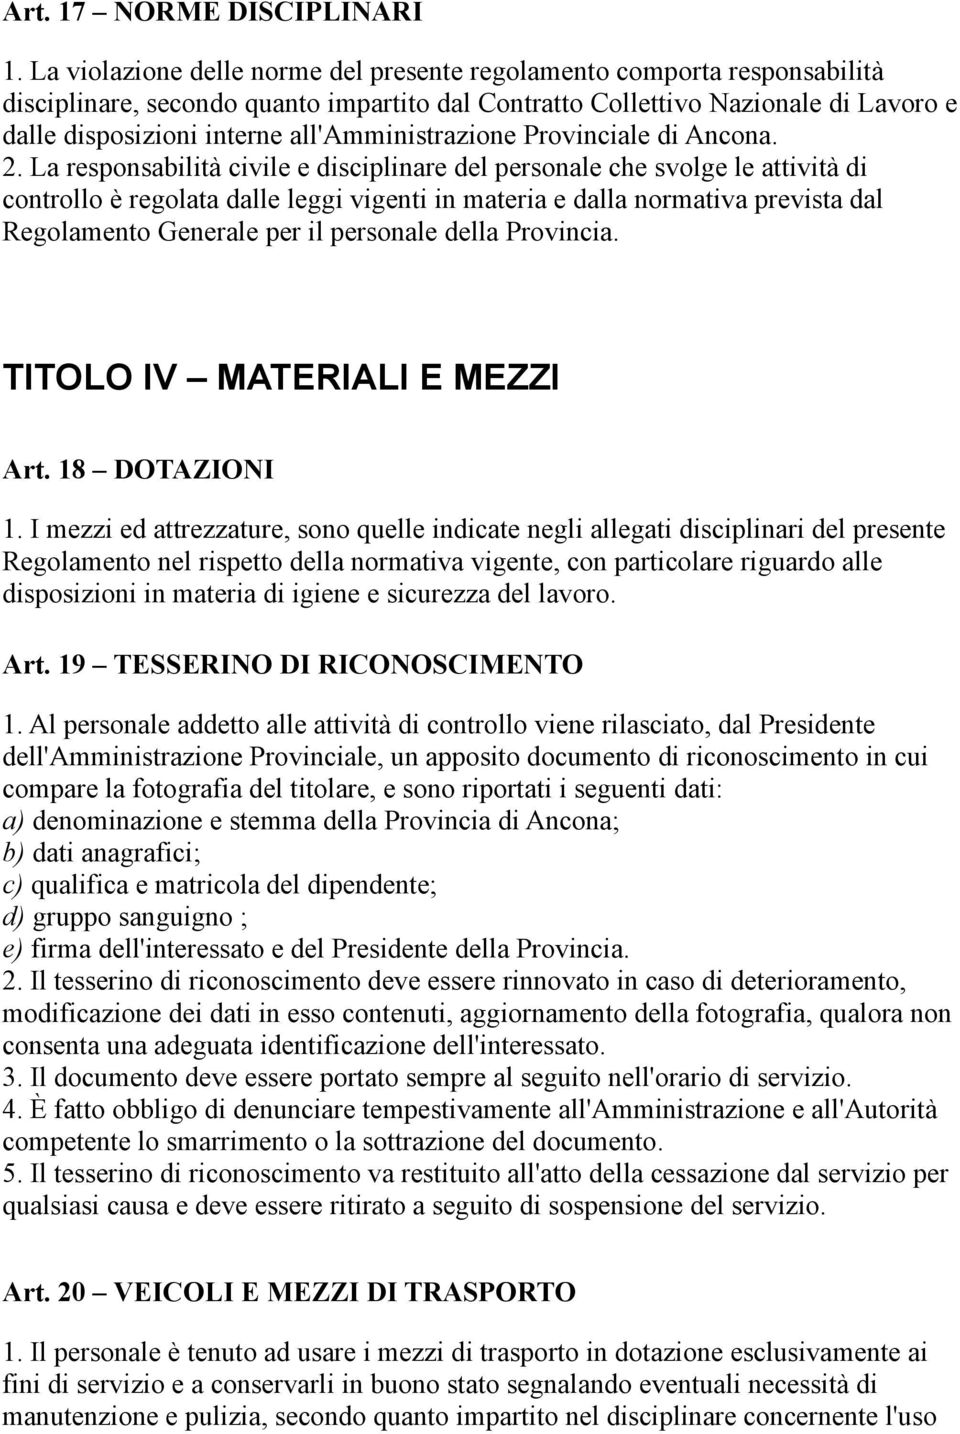 all'amministrazione Provinciale di Ancona. 2.